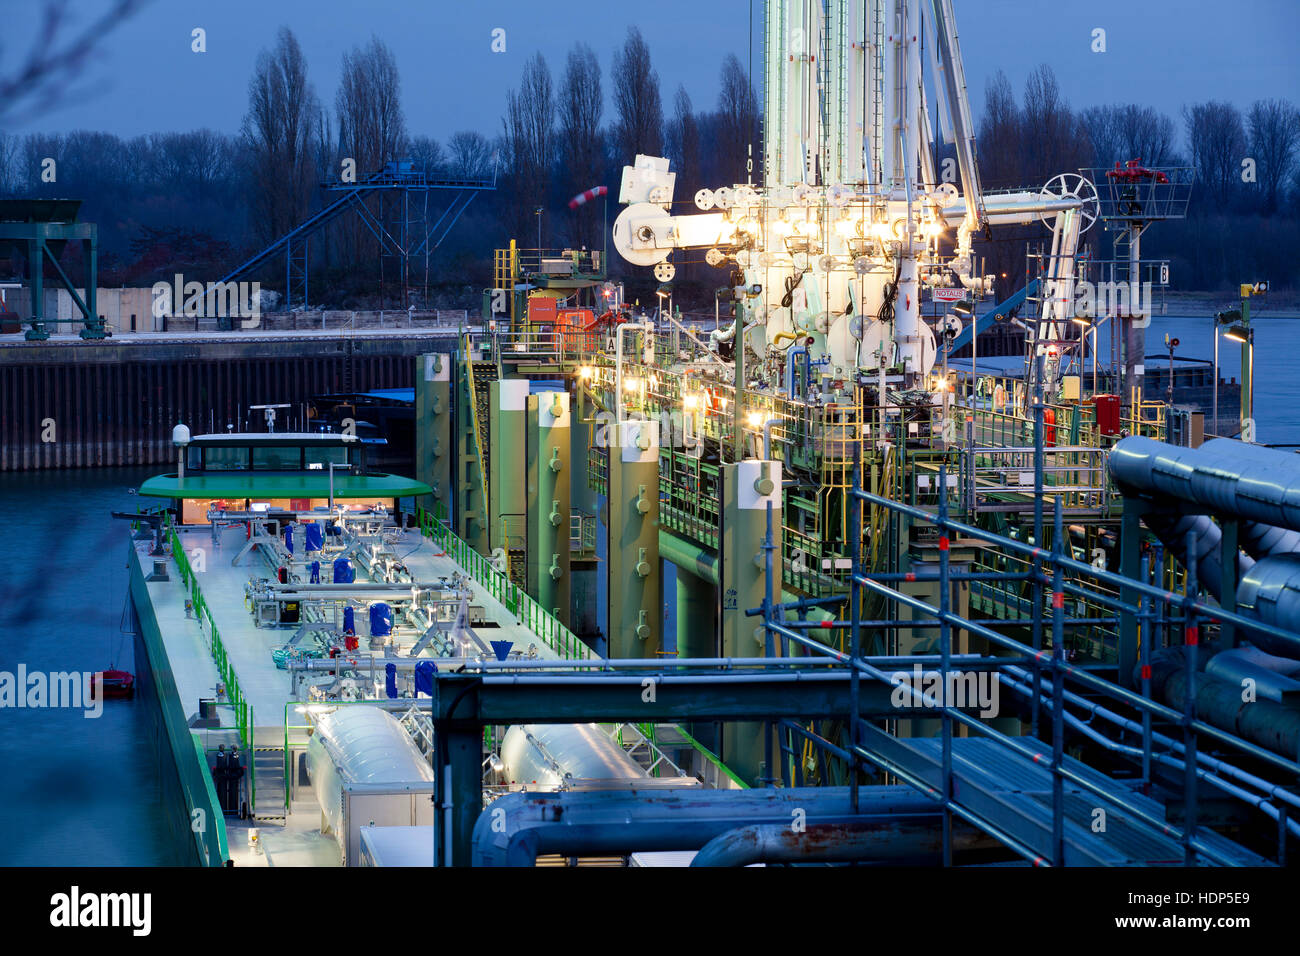 Allemagne, Cologne, port pétrolier Cologne-Godorf, lors d'une installation de chargement de produits liquides inflammables Banque D'Images